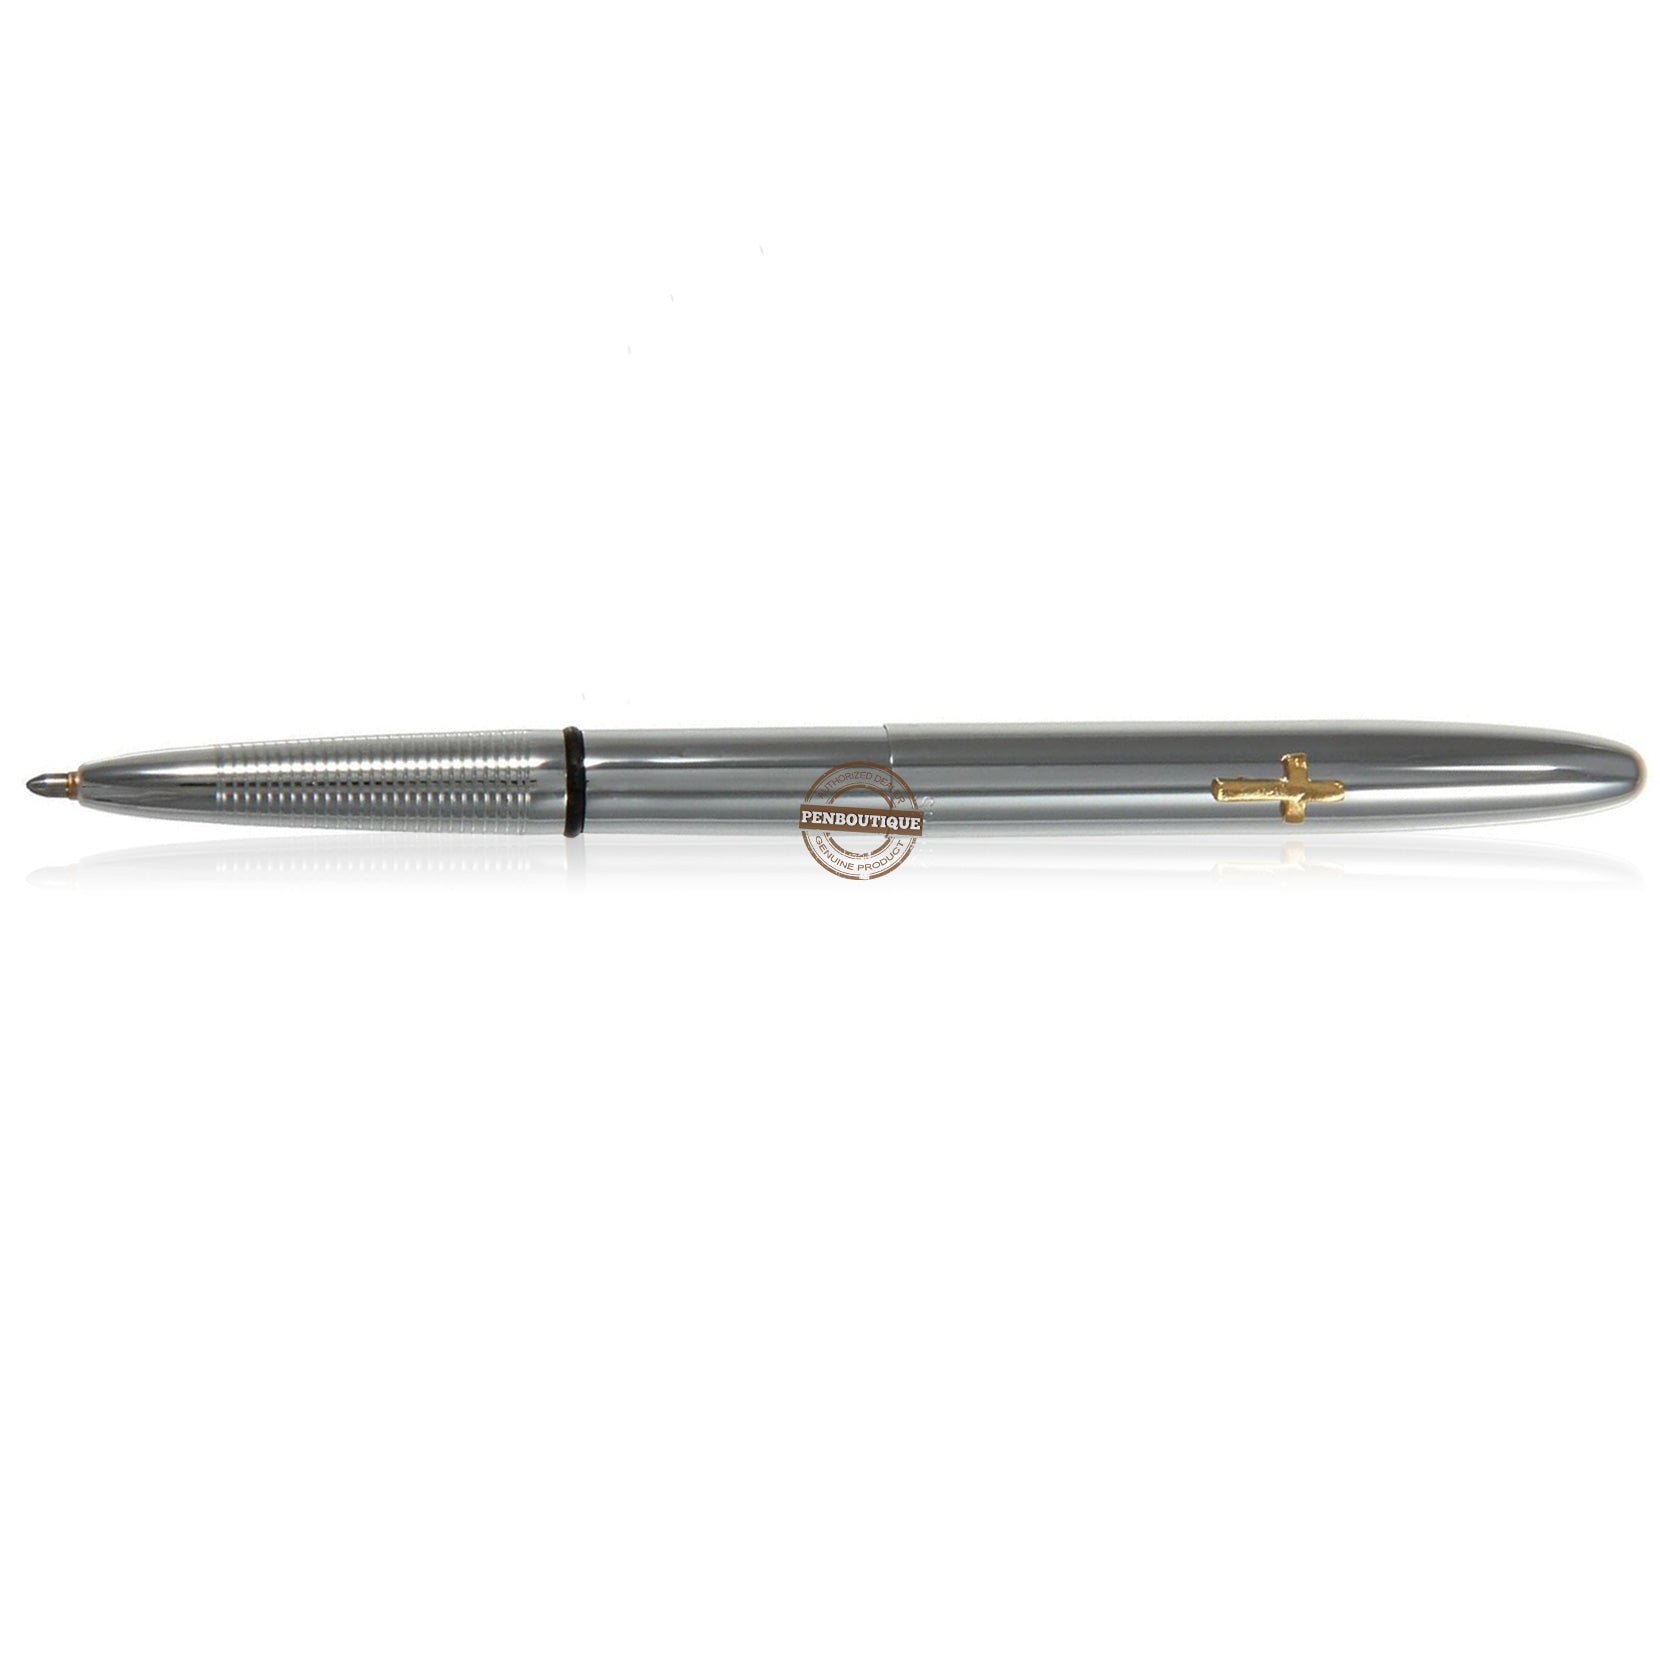 Fisher Space Pen Chrome Bullet with Cross Ballpoint Pen-Pen Boutique Ltd